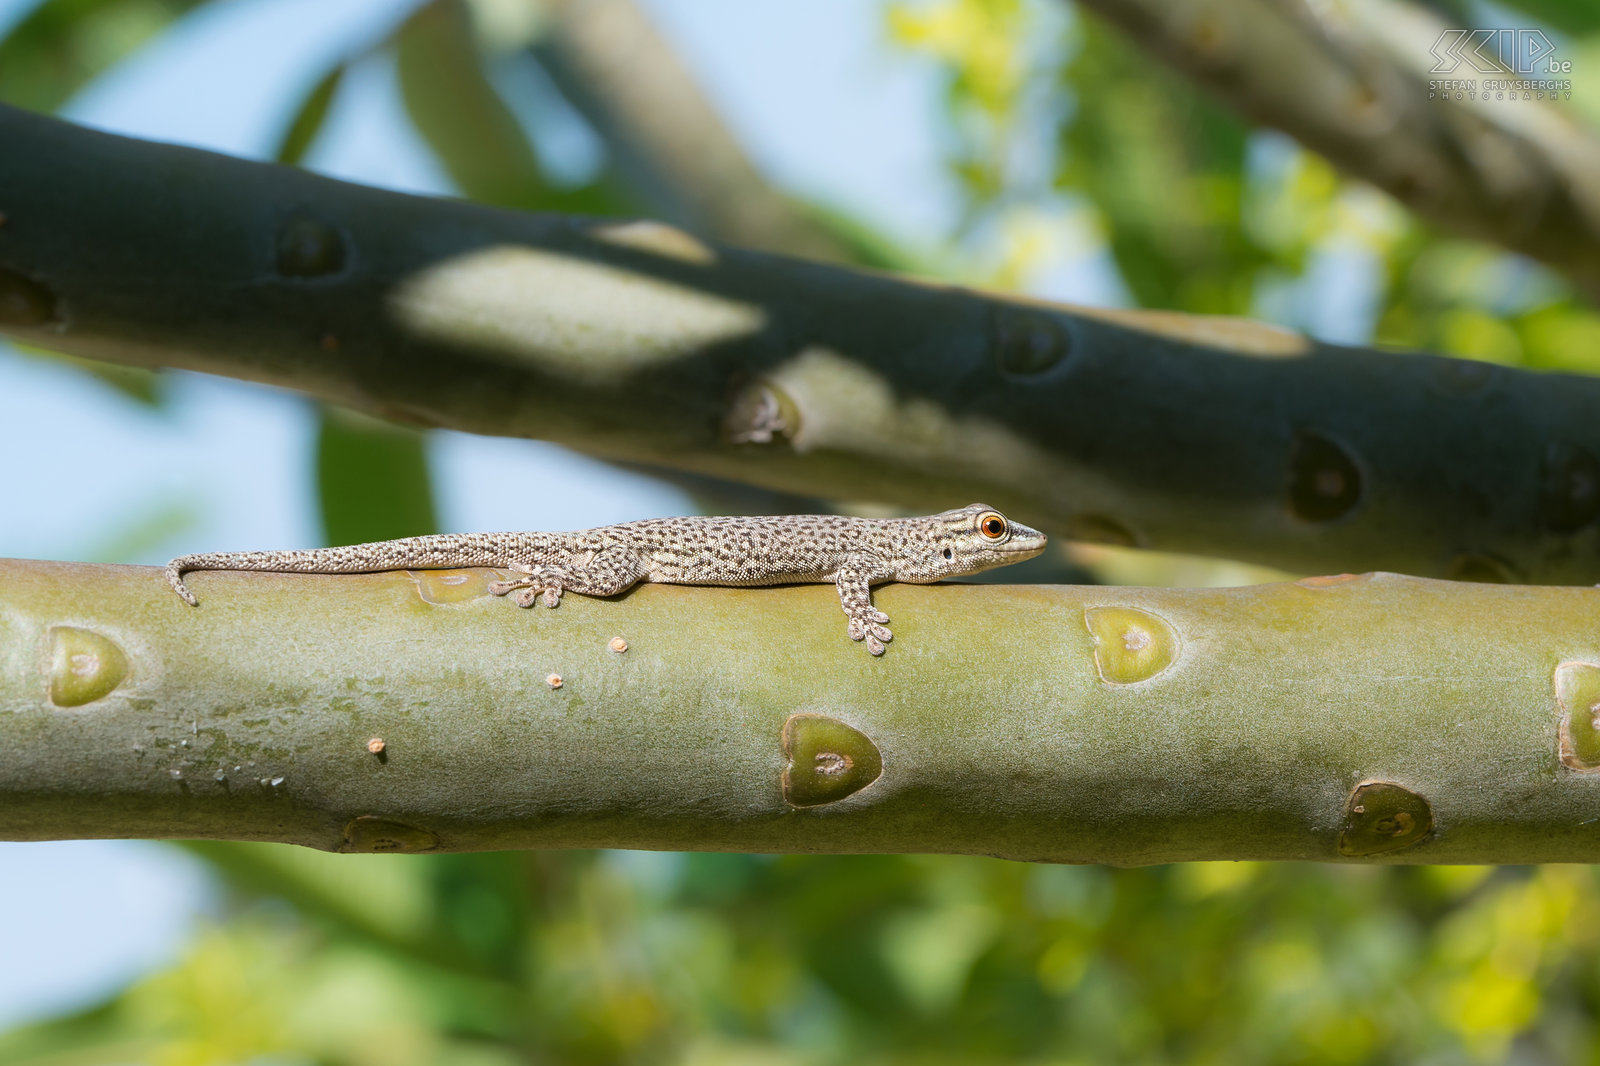 Miandrivazo - Phelsuma daggekko In tegenstelling tot de meeste gekko’s die nachtdieren zijn, zijn de Phelsuma dag gekko's (Phelsuma mutabilis) dagactieve hagedissen. Wij konden er heel wat spotten nabij onze lodge in Miandrivazo. Stefan Cruysberghs